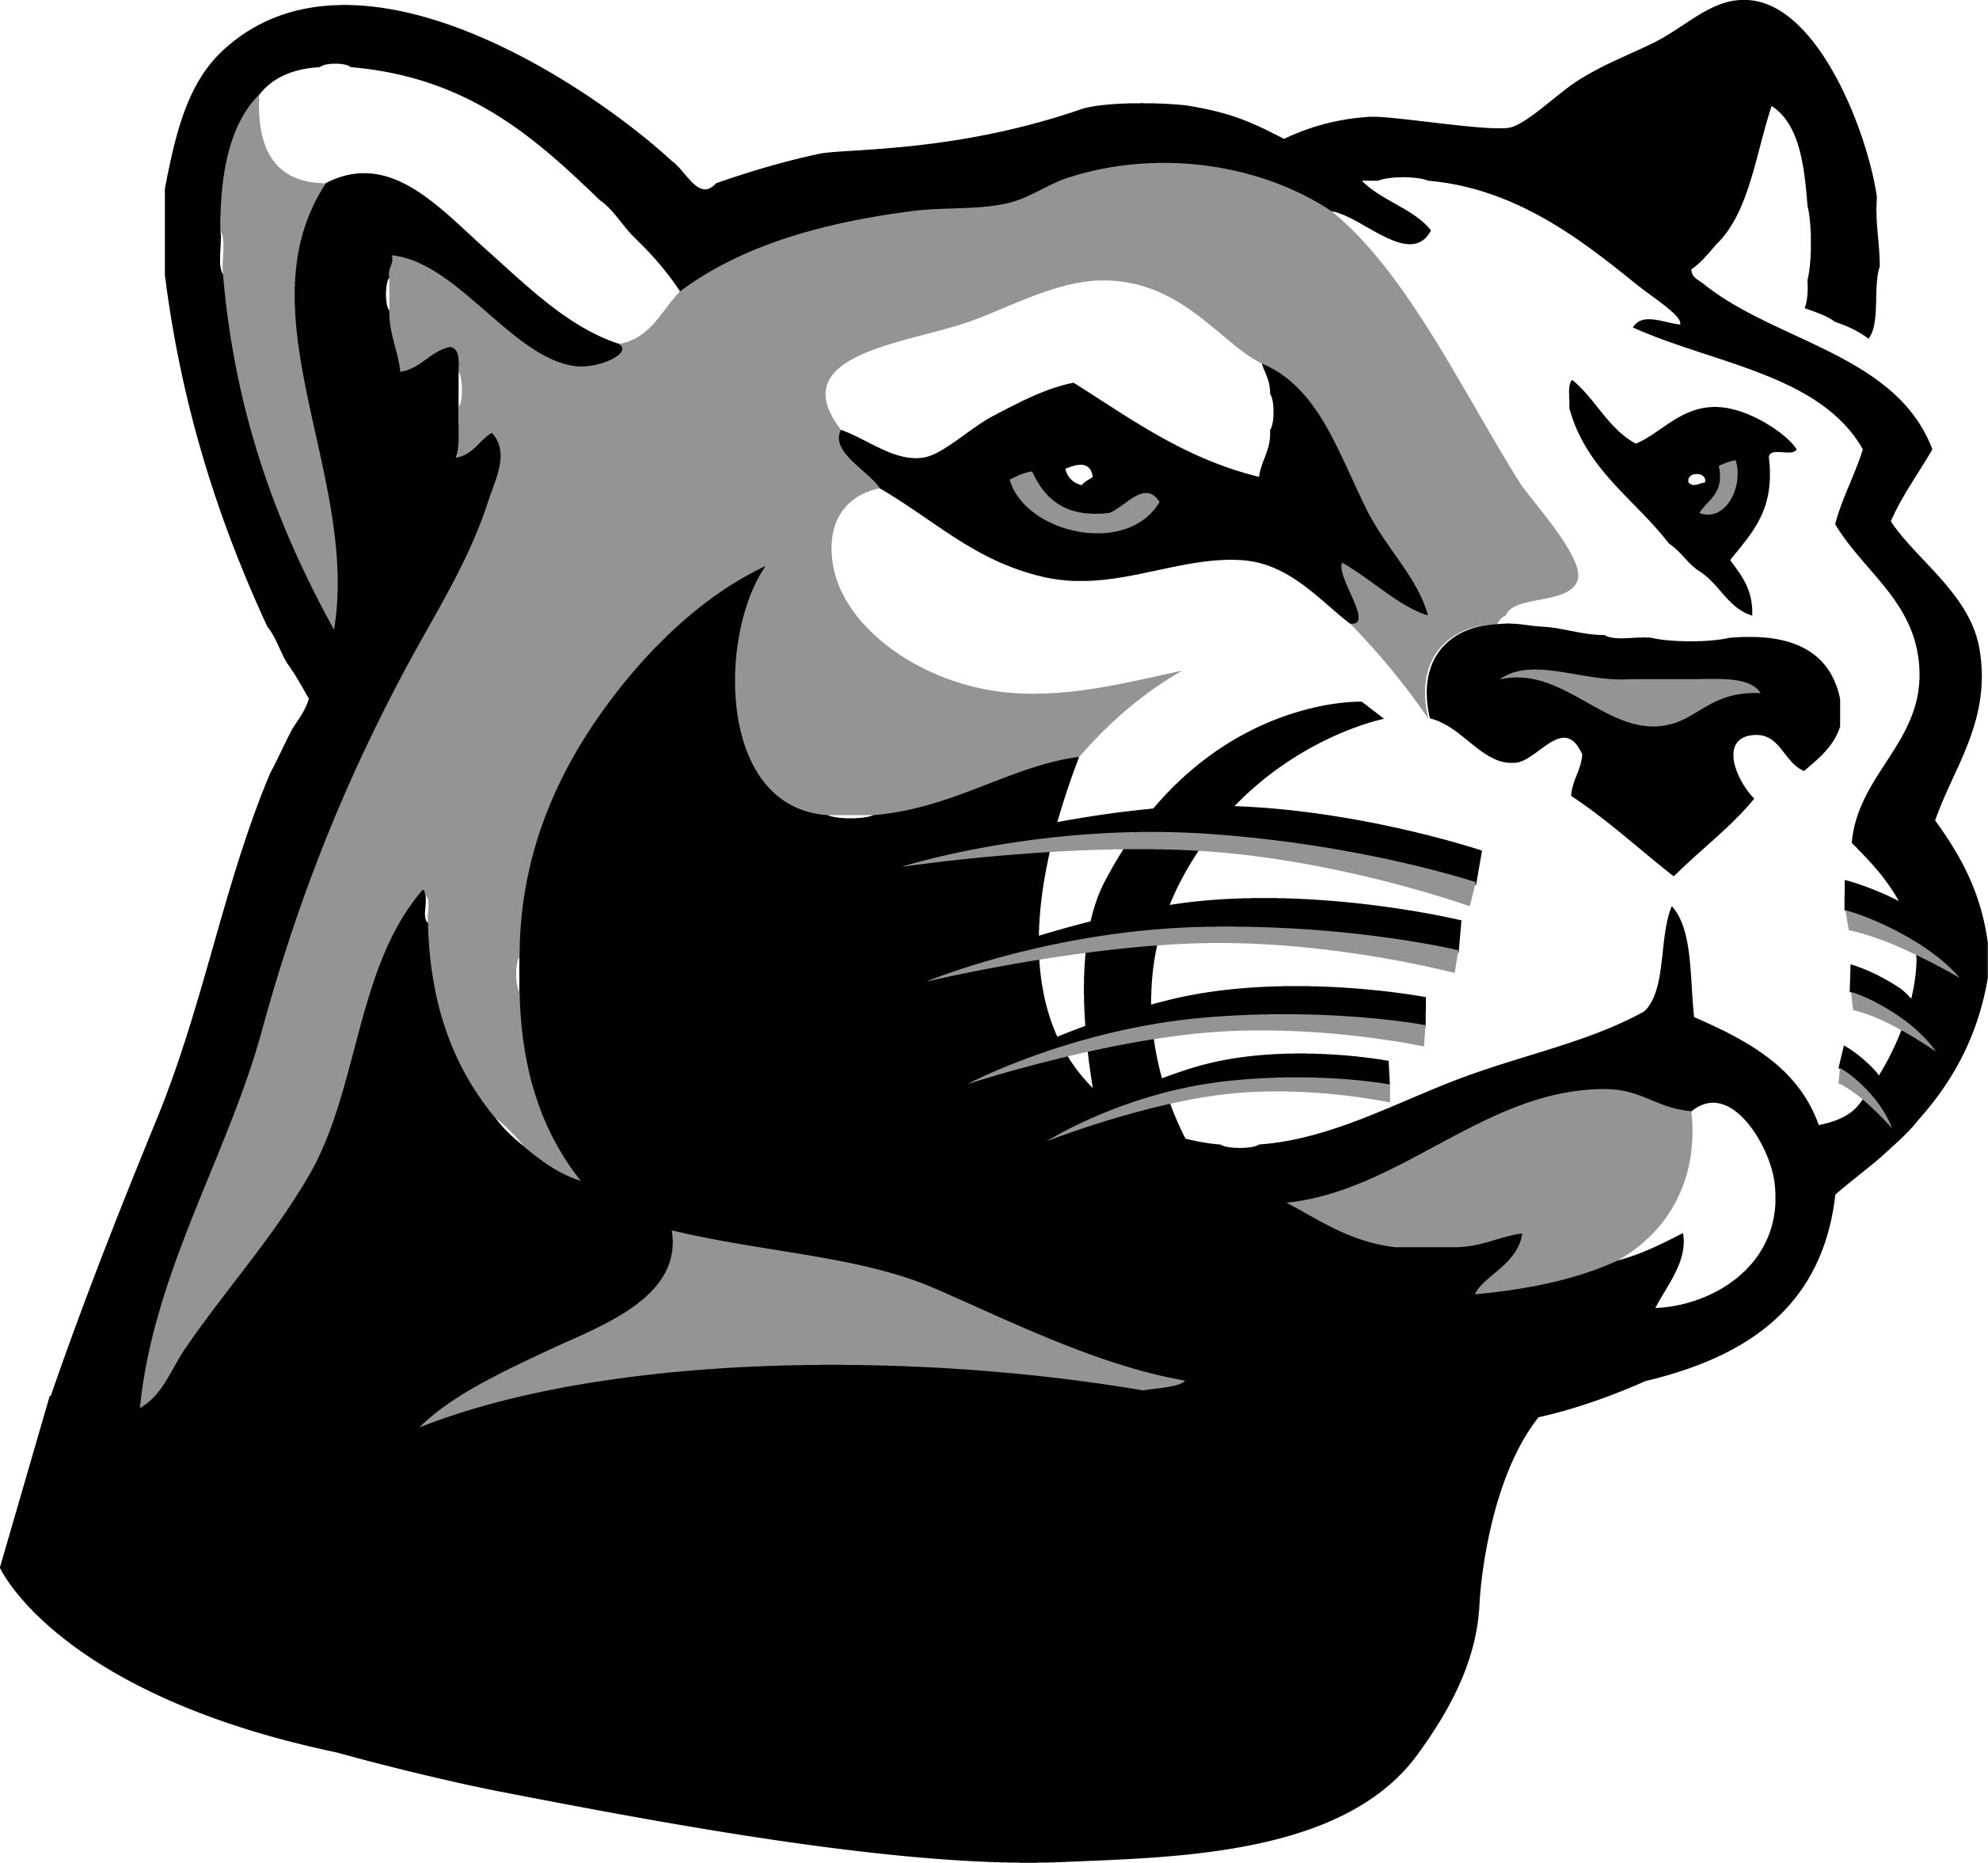 free panther logo clip art - photo #46